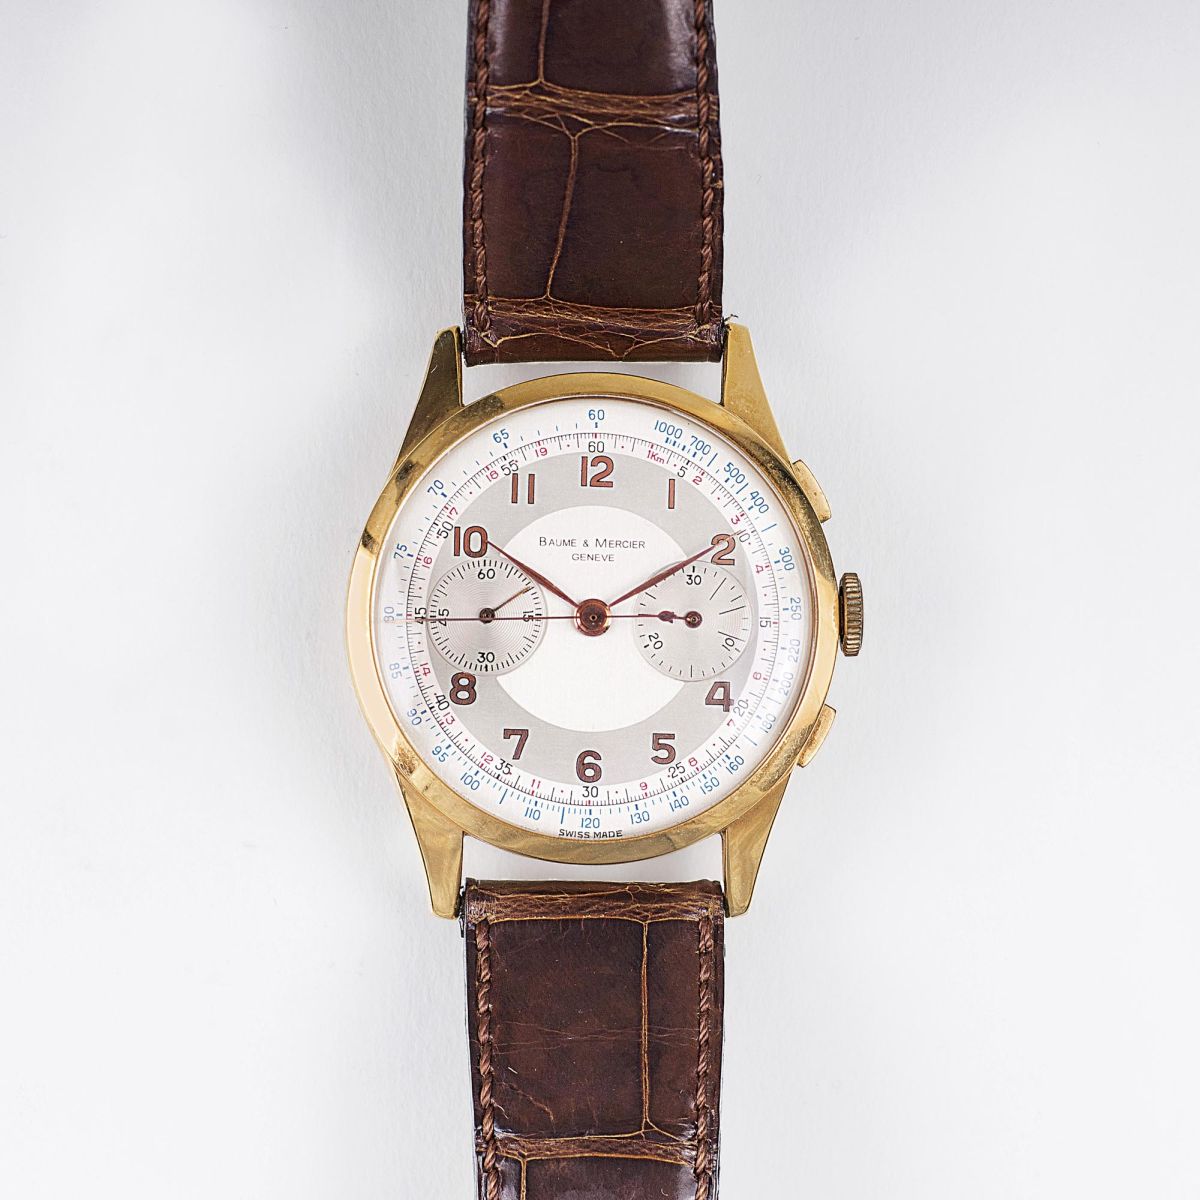 A Vintage Gentlemen's Watch Chronograph - Telemeter